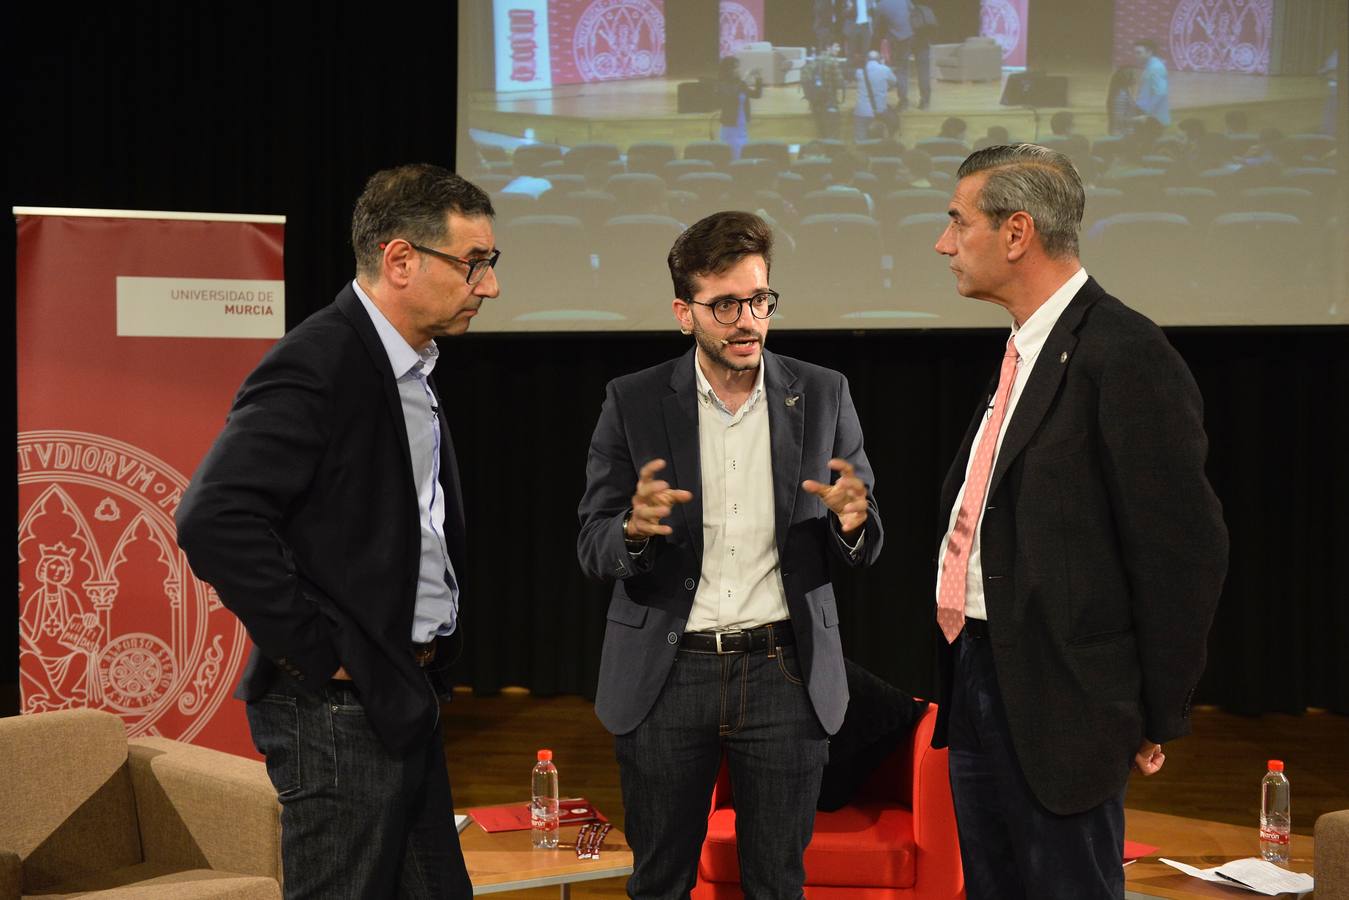 Los dos candidatos a rector de la Universidad de Murcia (UMU) Pedro Lozano y José Luján participaron en un debate con estudiantes en la Facultad de Educación.